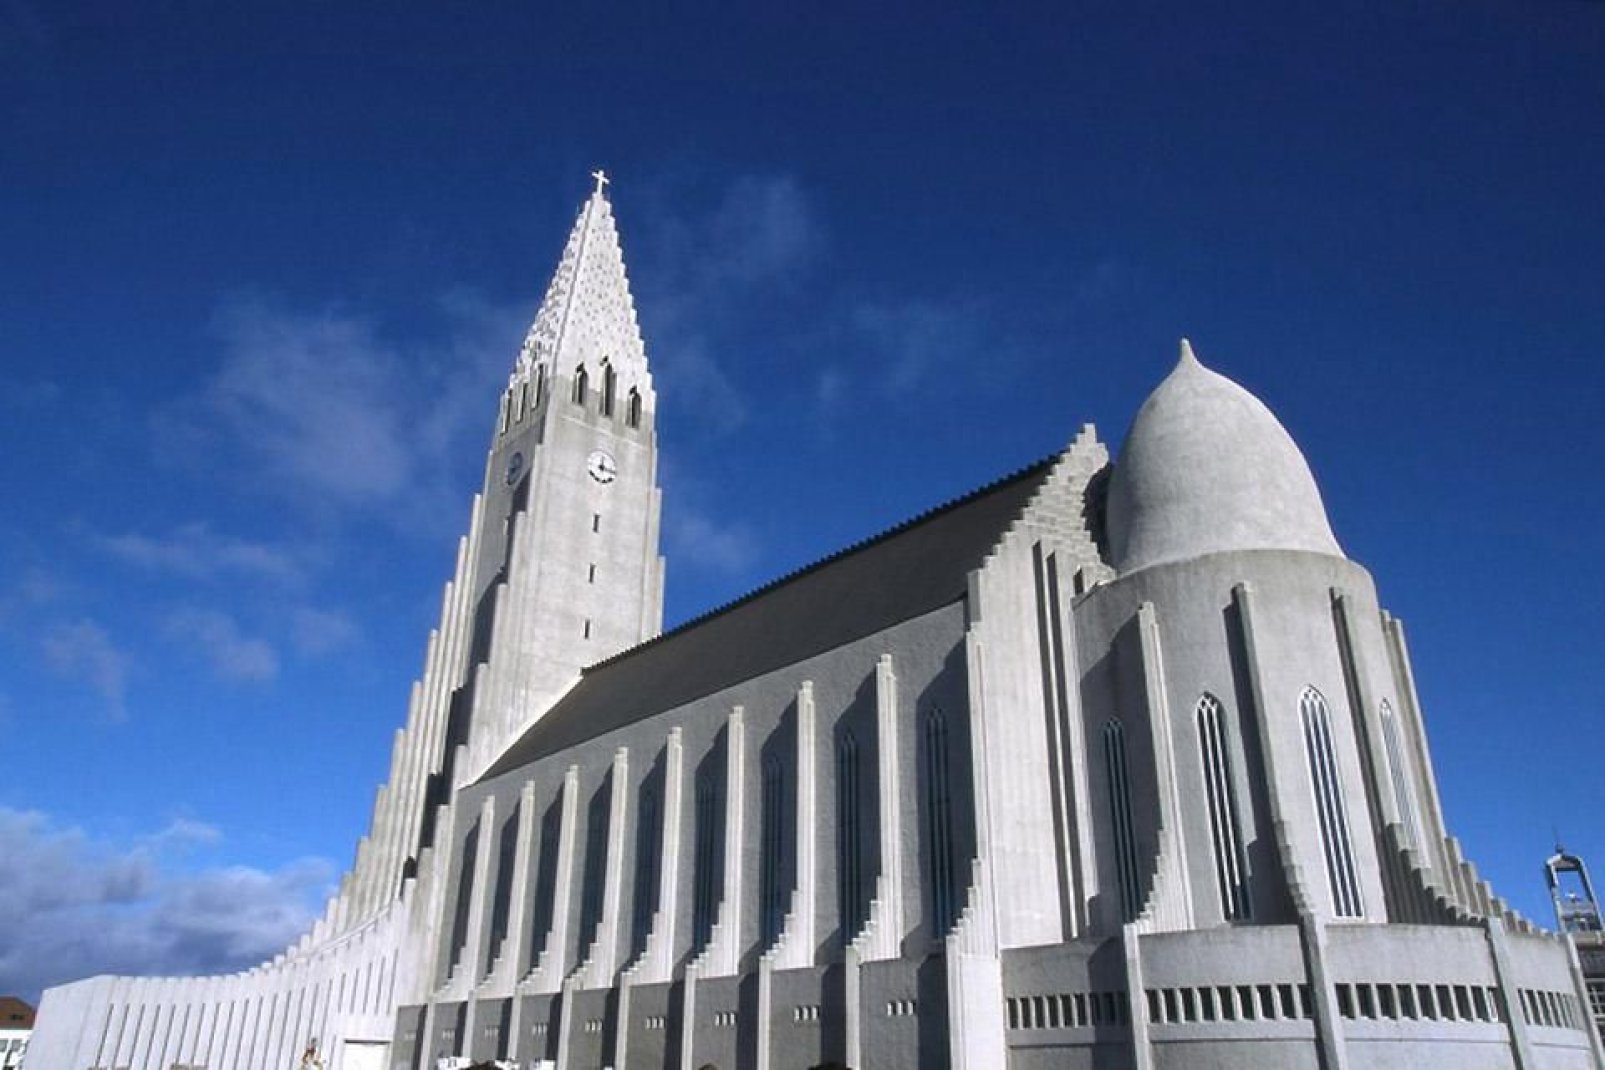 Symbole de Reykjavik, Hallgrímskirkja est la plus grande église de la capitale islandaise.